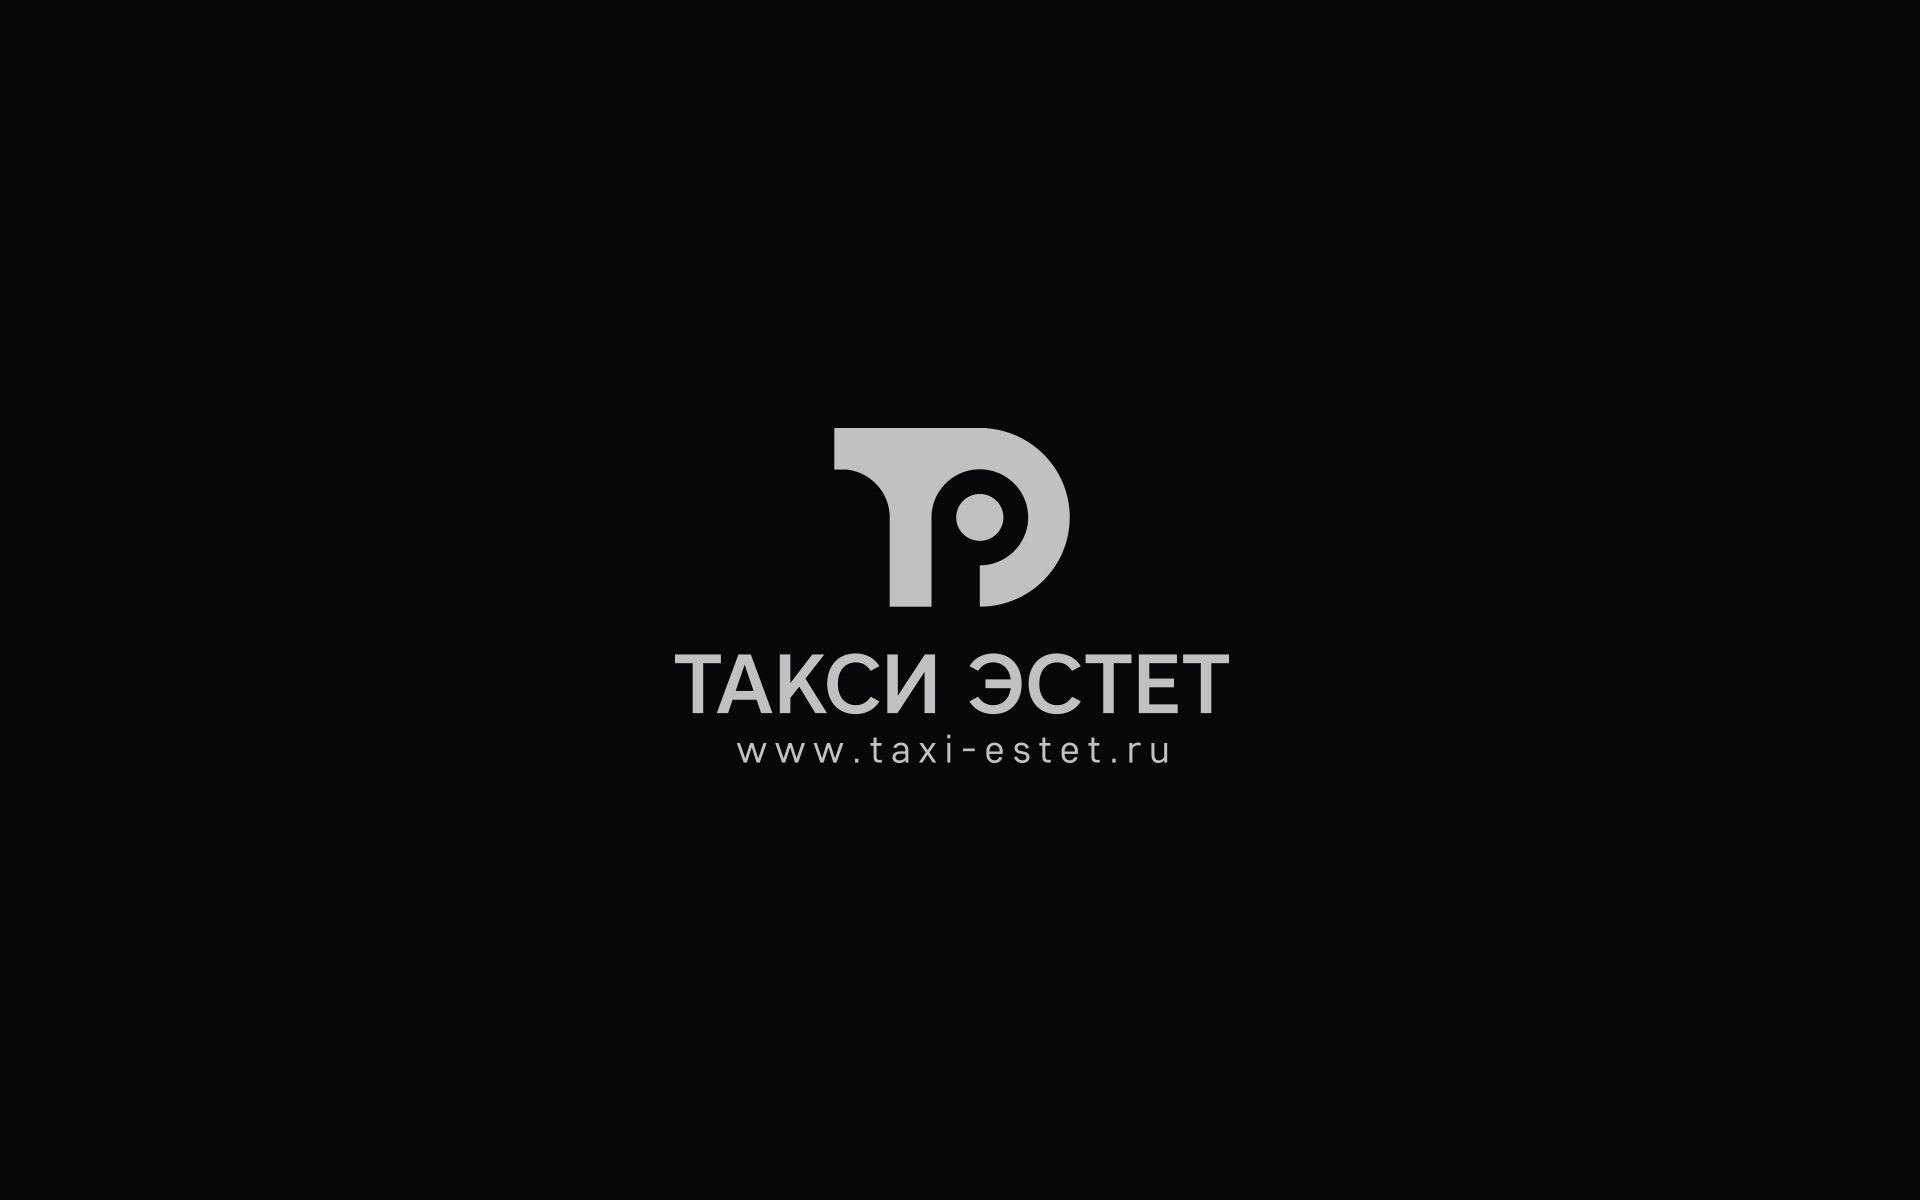 Логотип для taxi-estet.ru - дизайнер U4po4mak